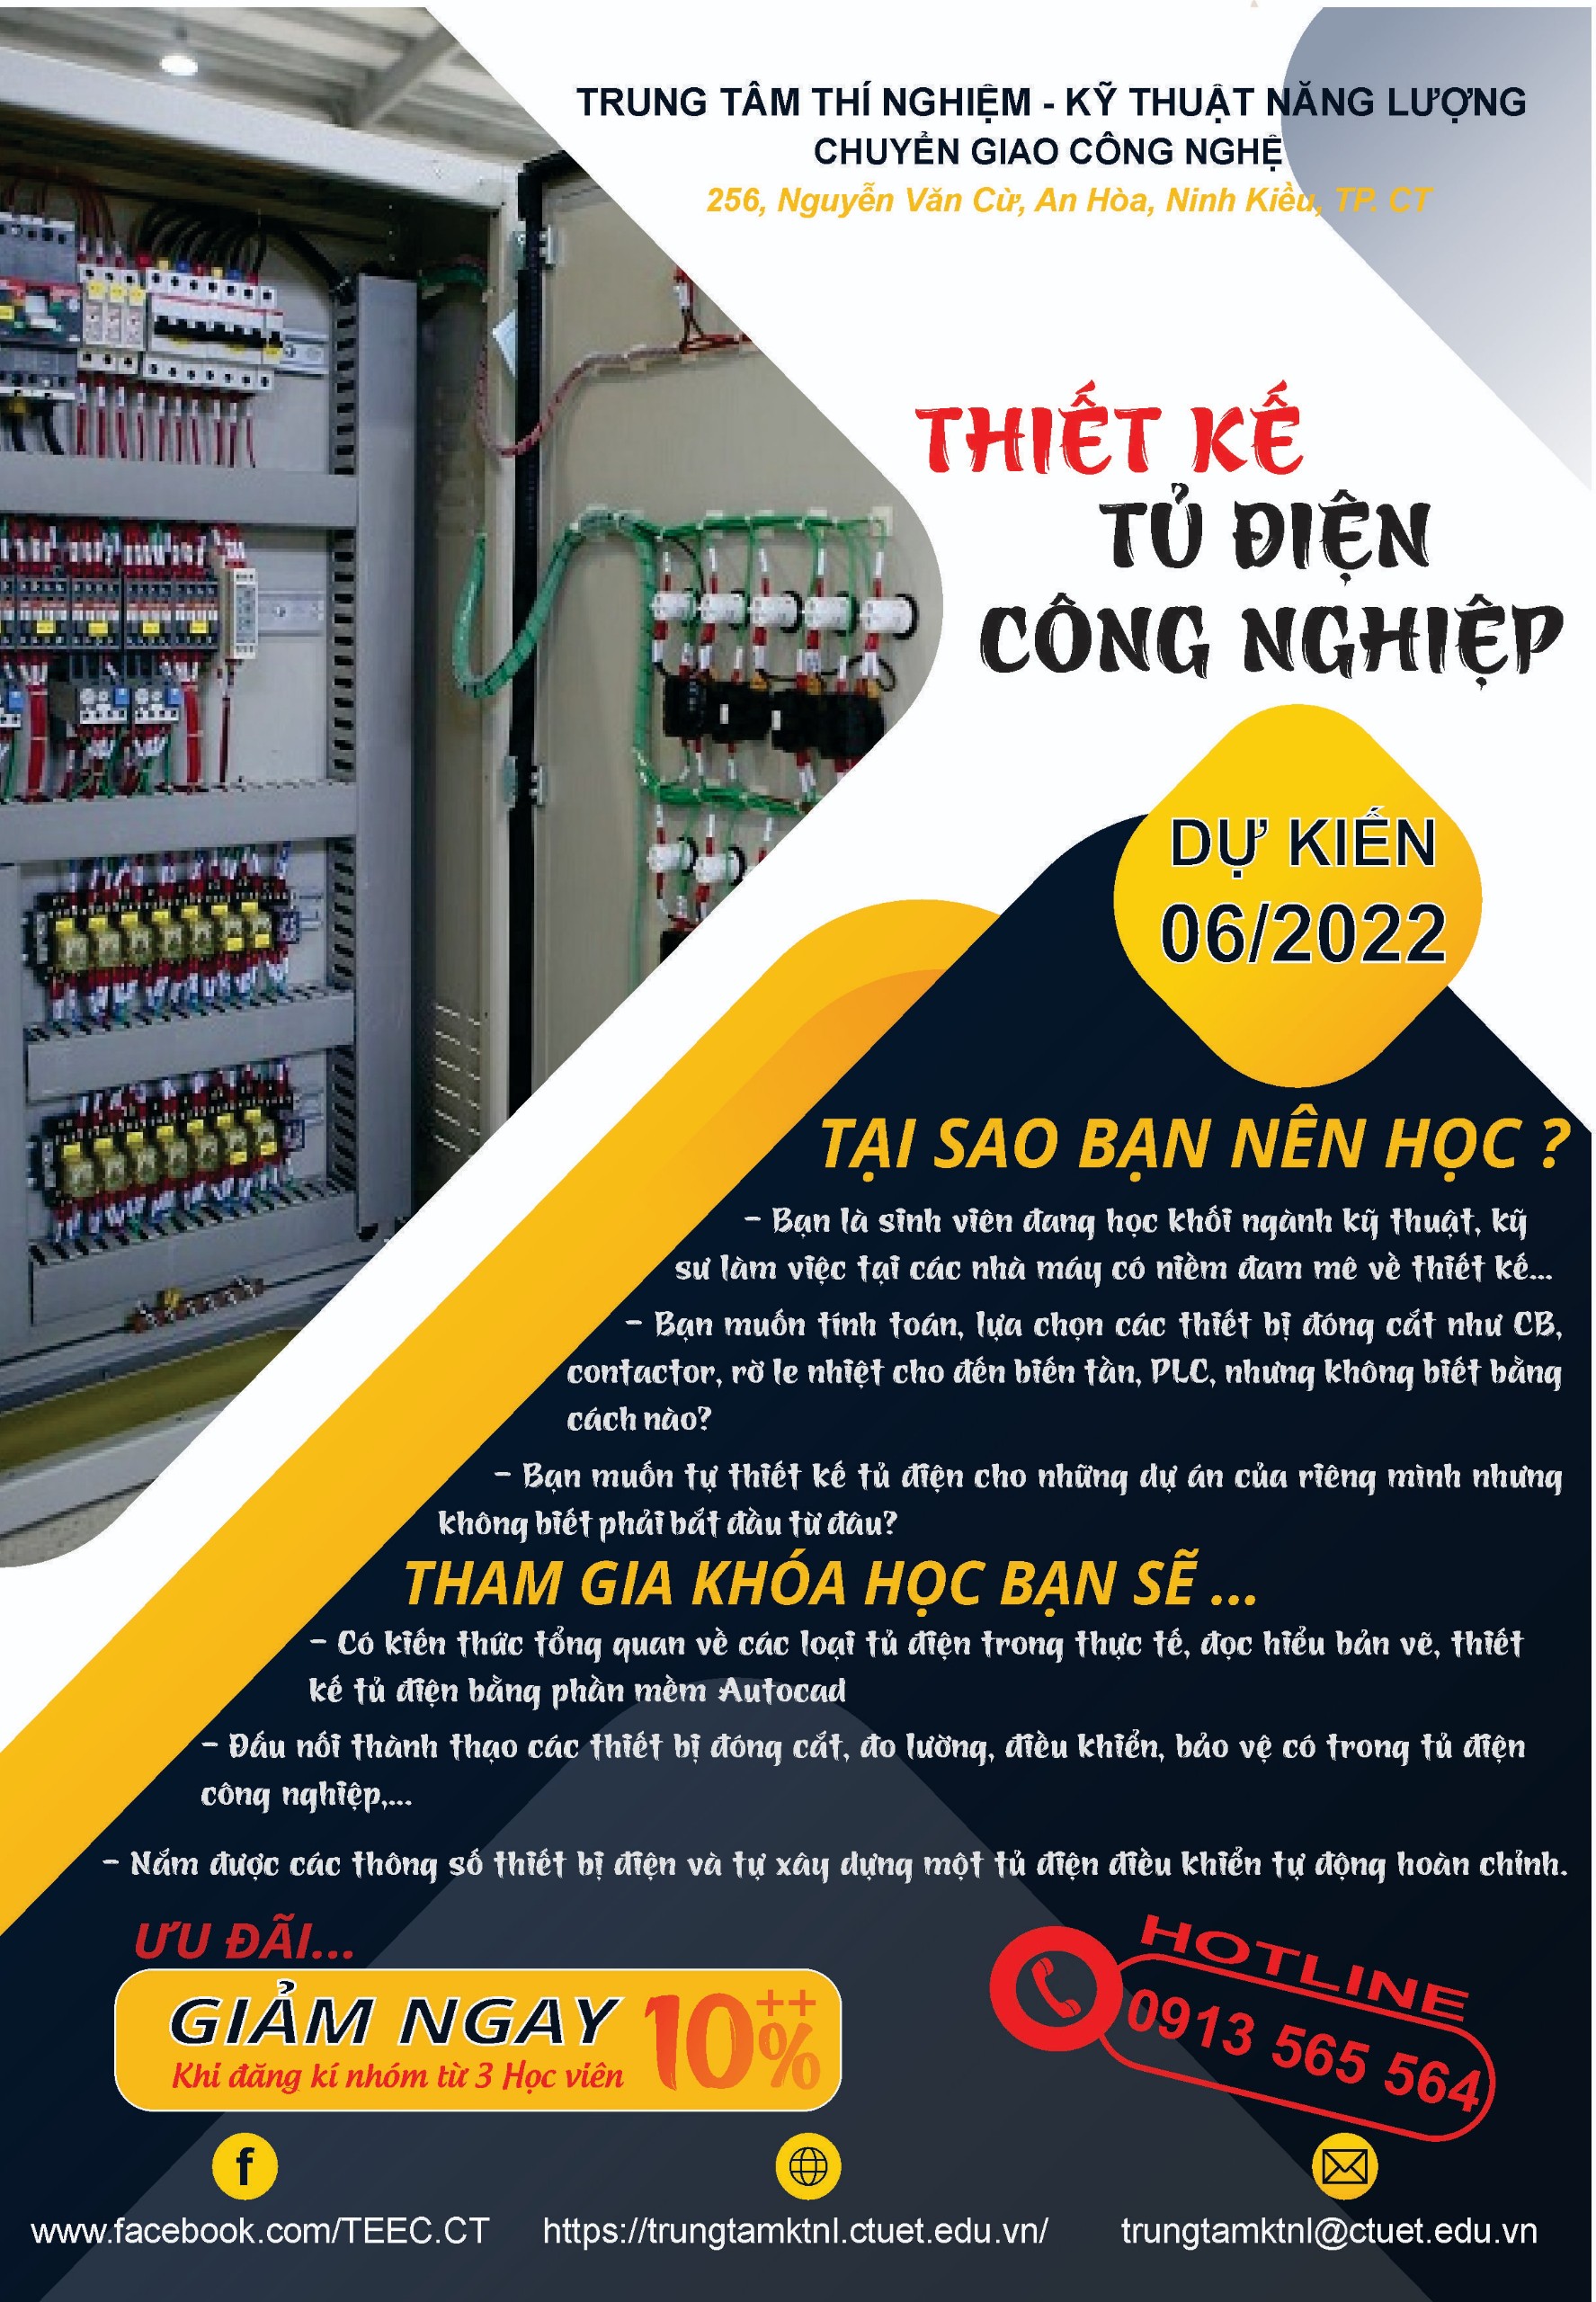 Tủ điện công tơ - Sản xuất và lắp đặt theo yêu cầu | IEEC Việt Nam